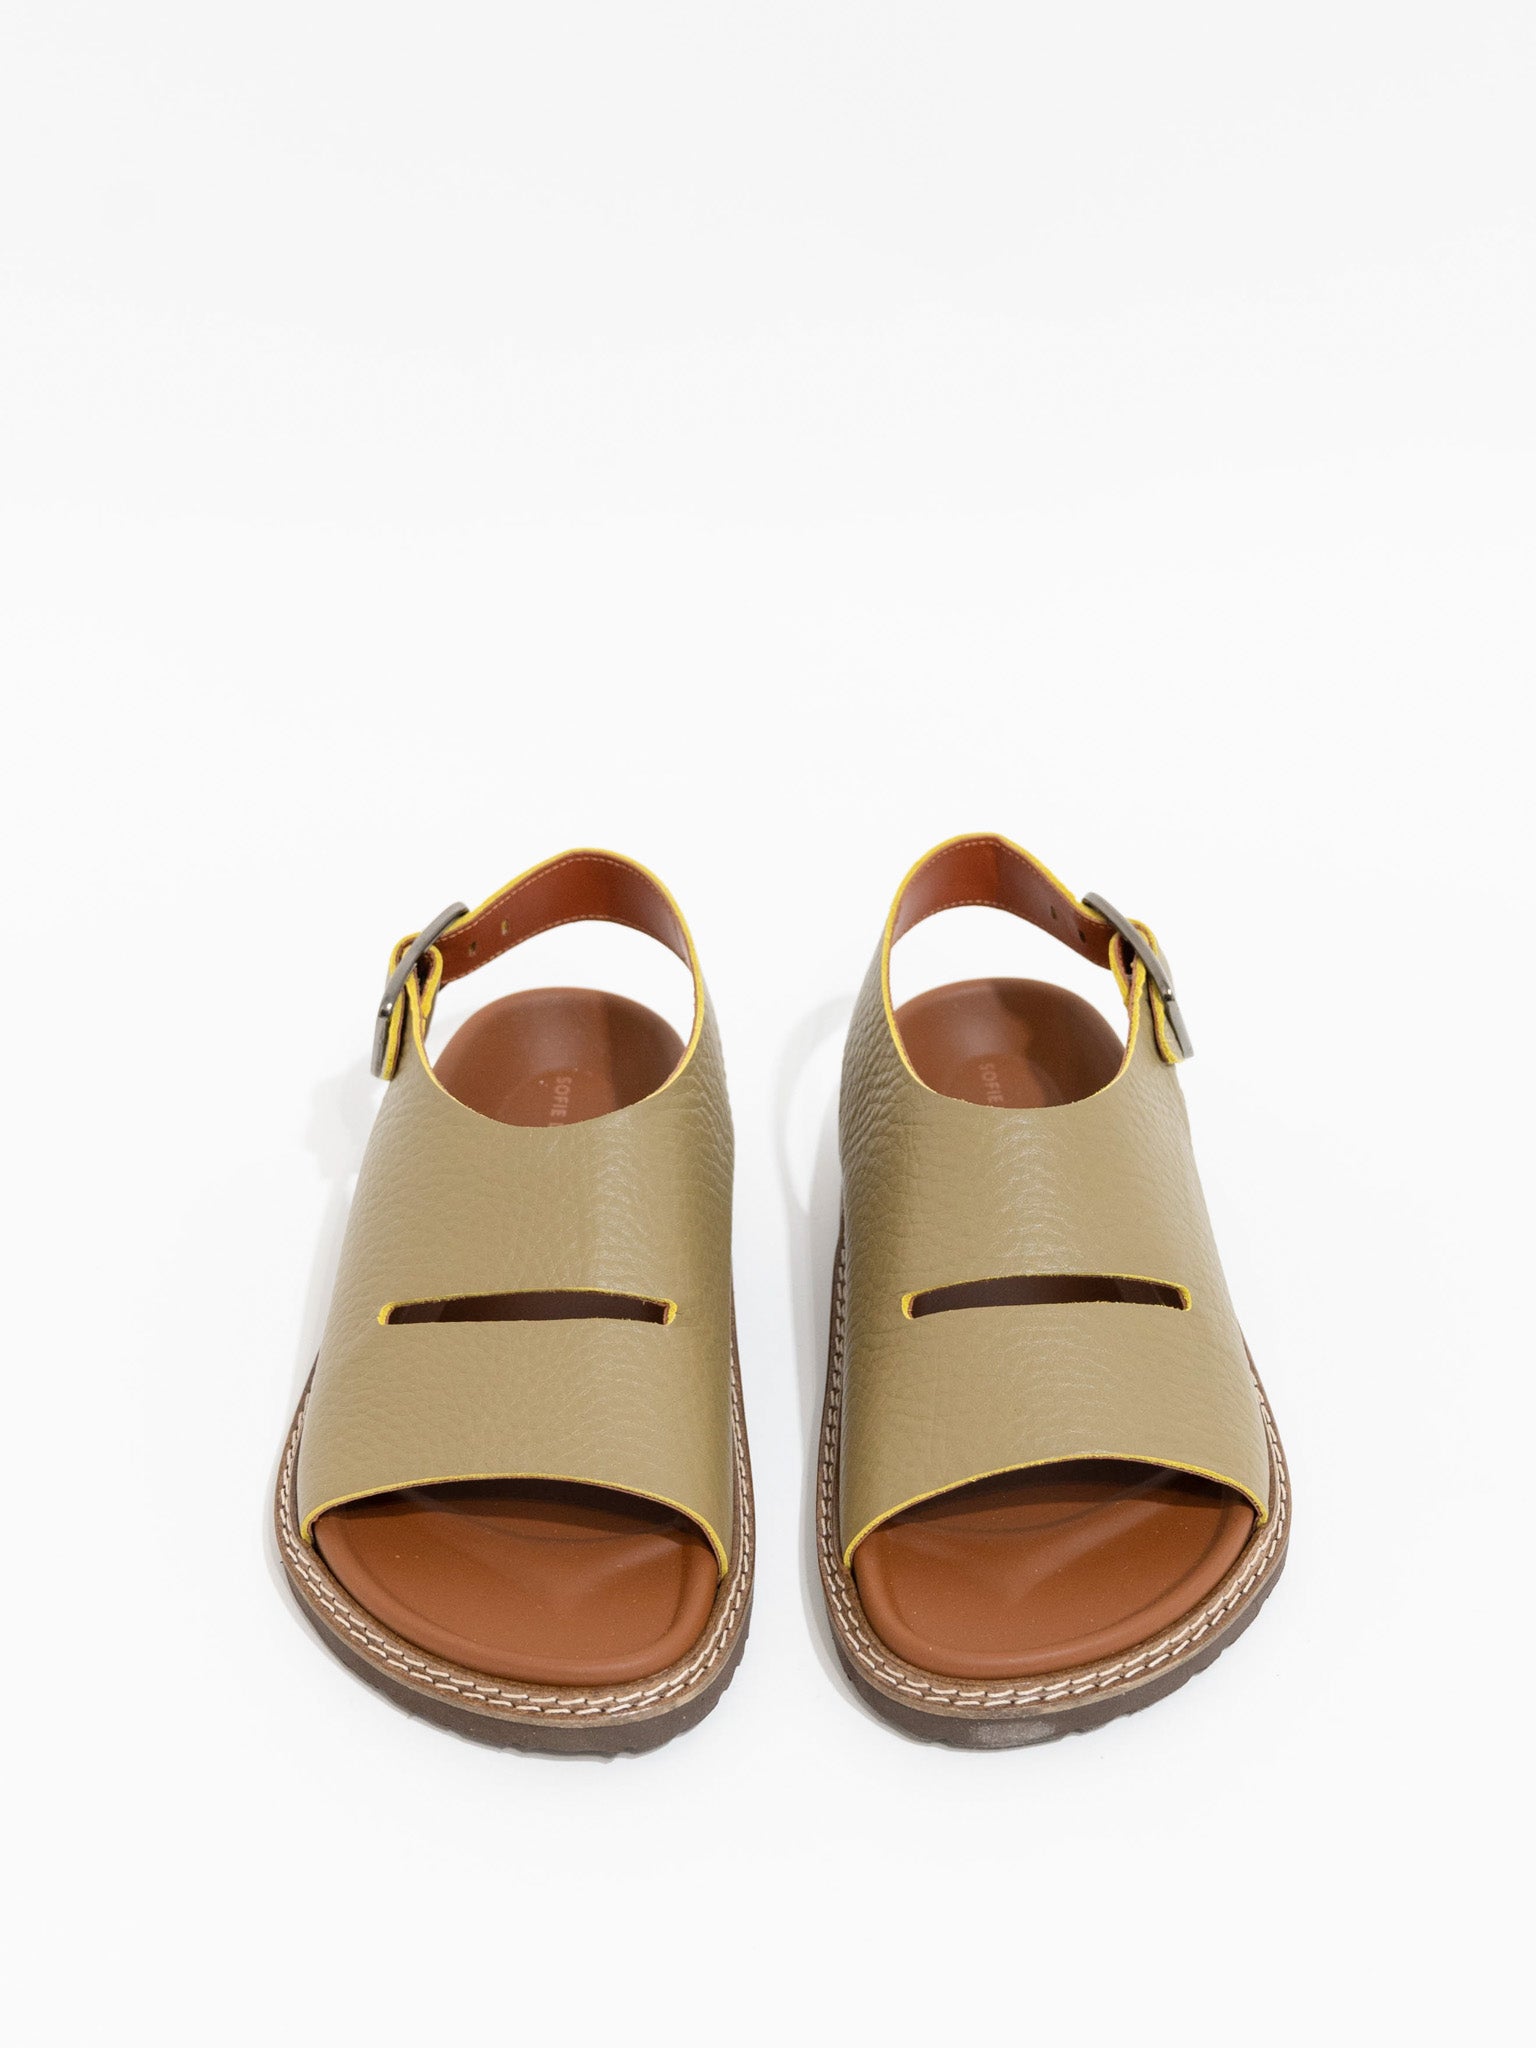 Namu Shop - Sofie D'Hoore Future Ankle Strap Sandals - Lentil